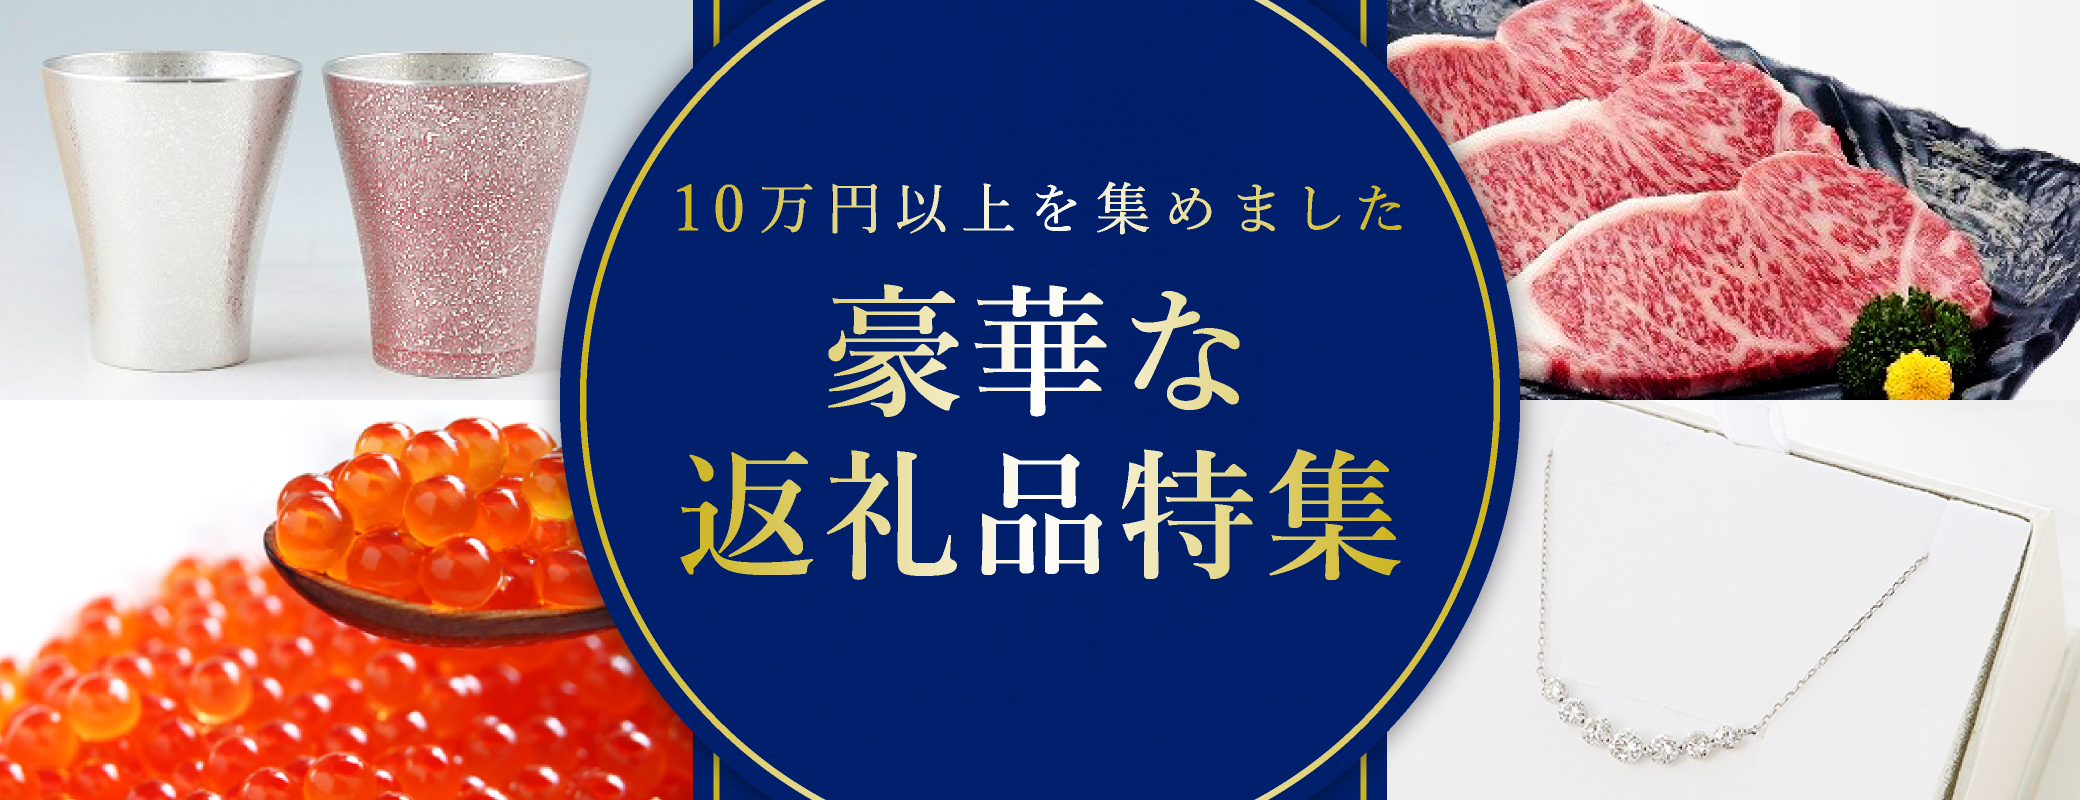 13109円 【セール】 万田アミノアルファ 1L